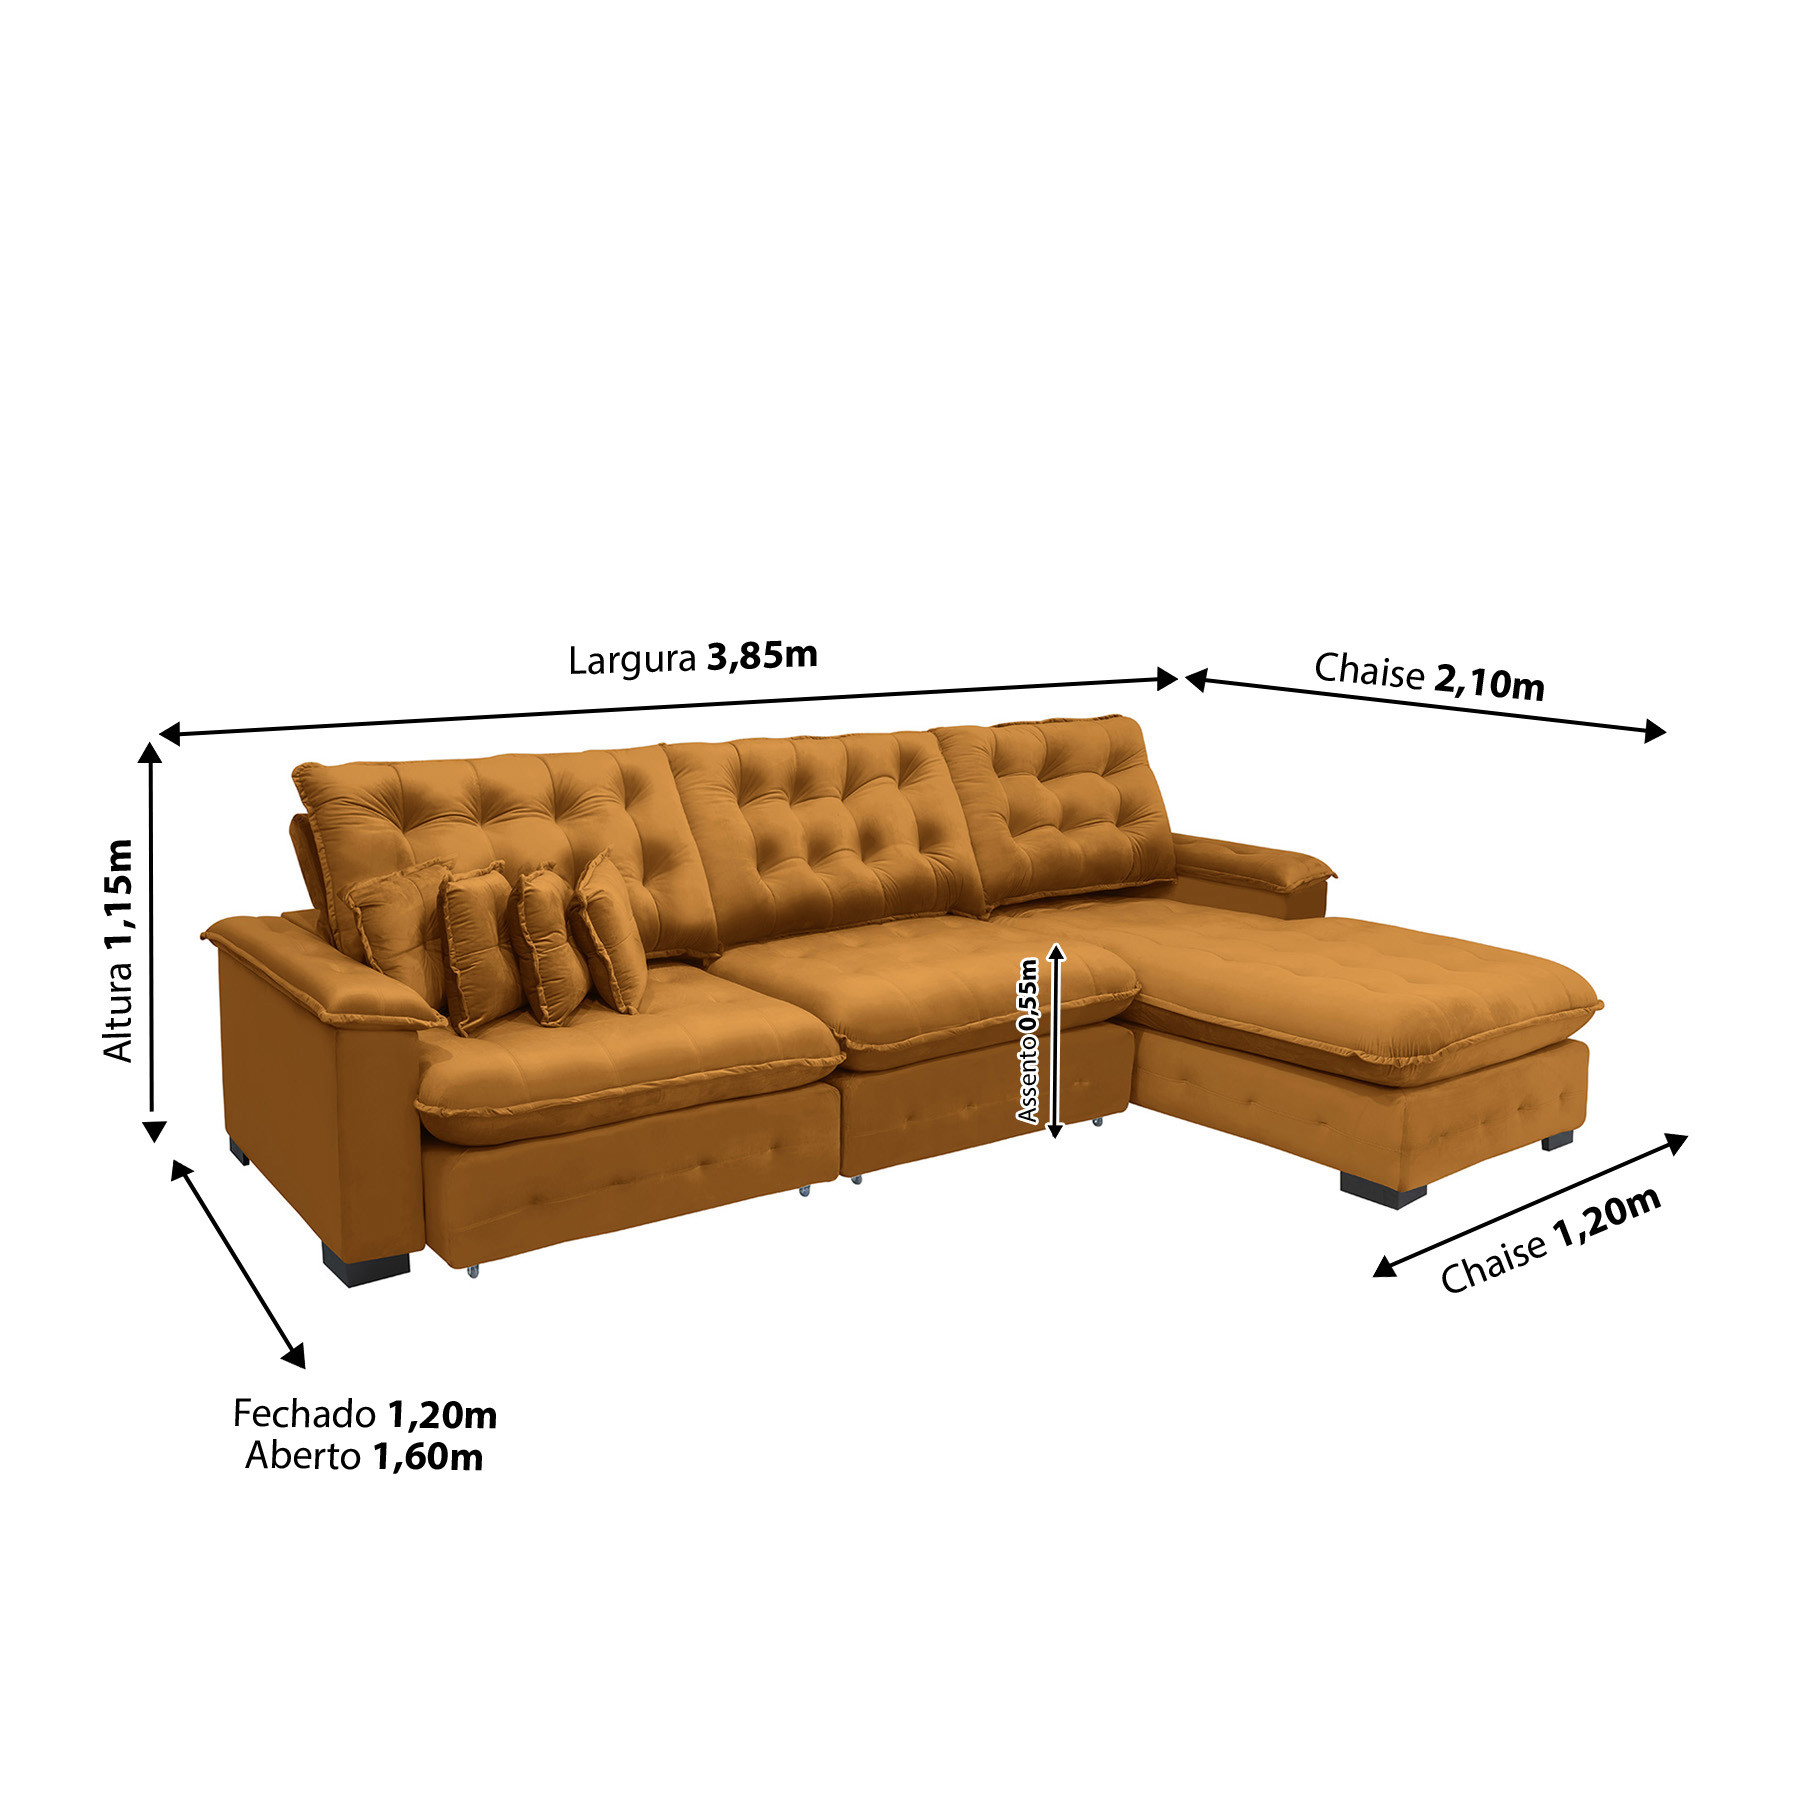 Sofá com Chaise 2,90 x 1,80 - Fox – Conceito Mobile